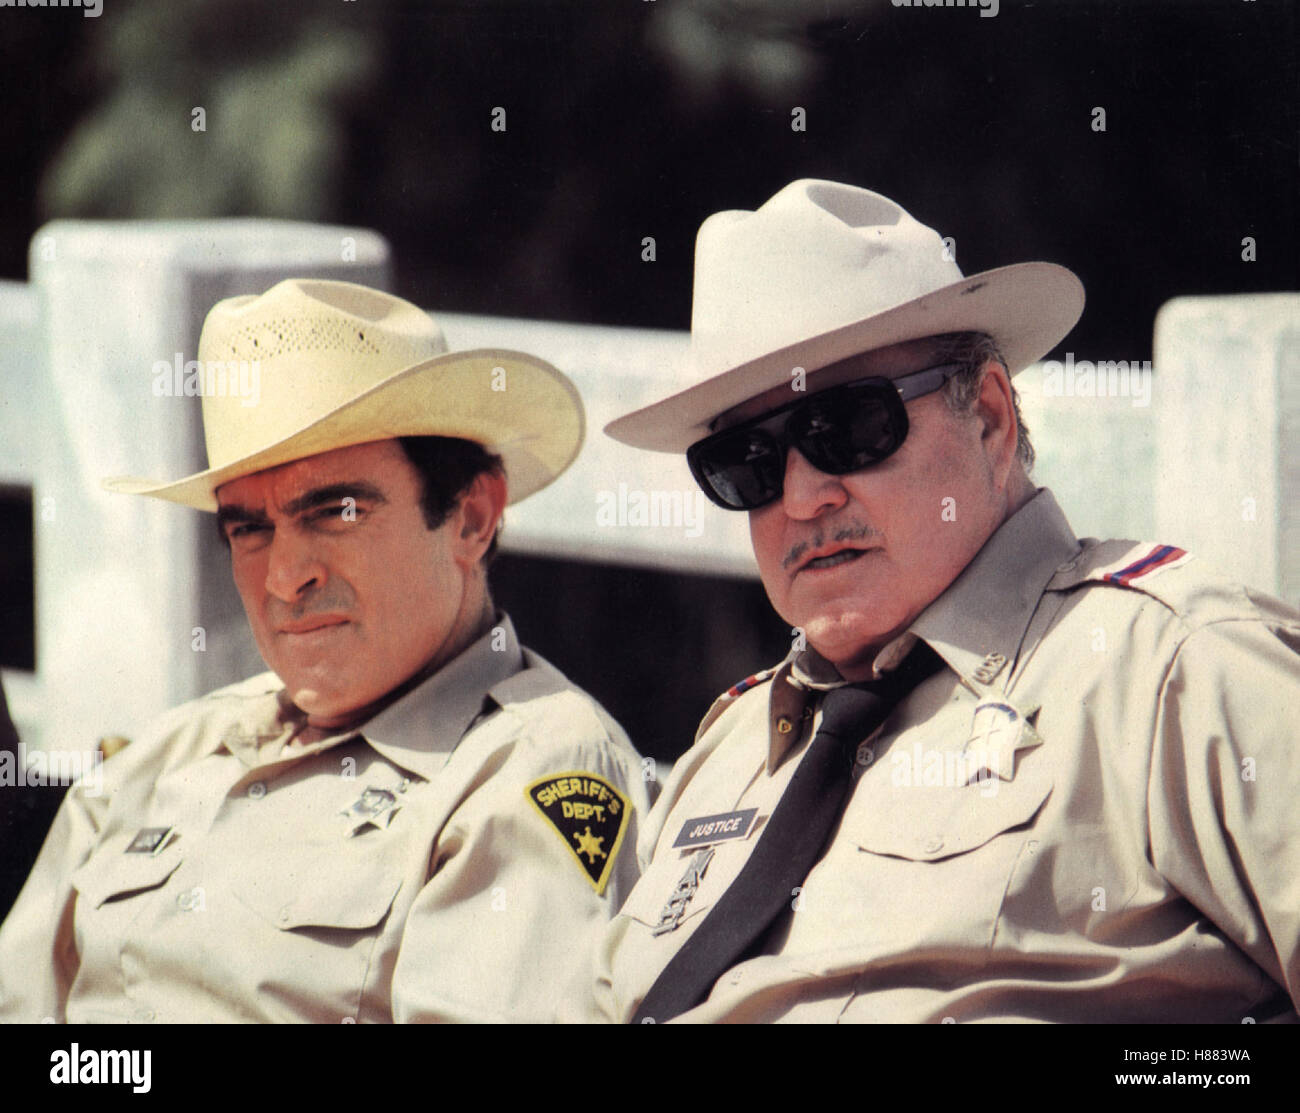 Das ausgekochte Schlitzohr ist wieder auf Achse, (SMOKEY AND THE BANDIT RIDE AGAIN) USA 1980, Regie: Hal Needham, MIKE HENRY, JACKIE GLEASON, Key: Sheriff, Sheriffstern, Sonnenbrille Stock Photo